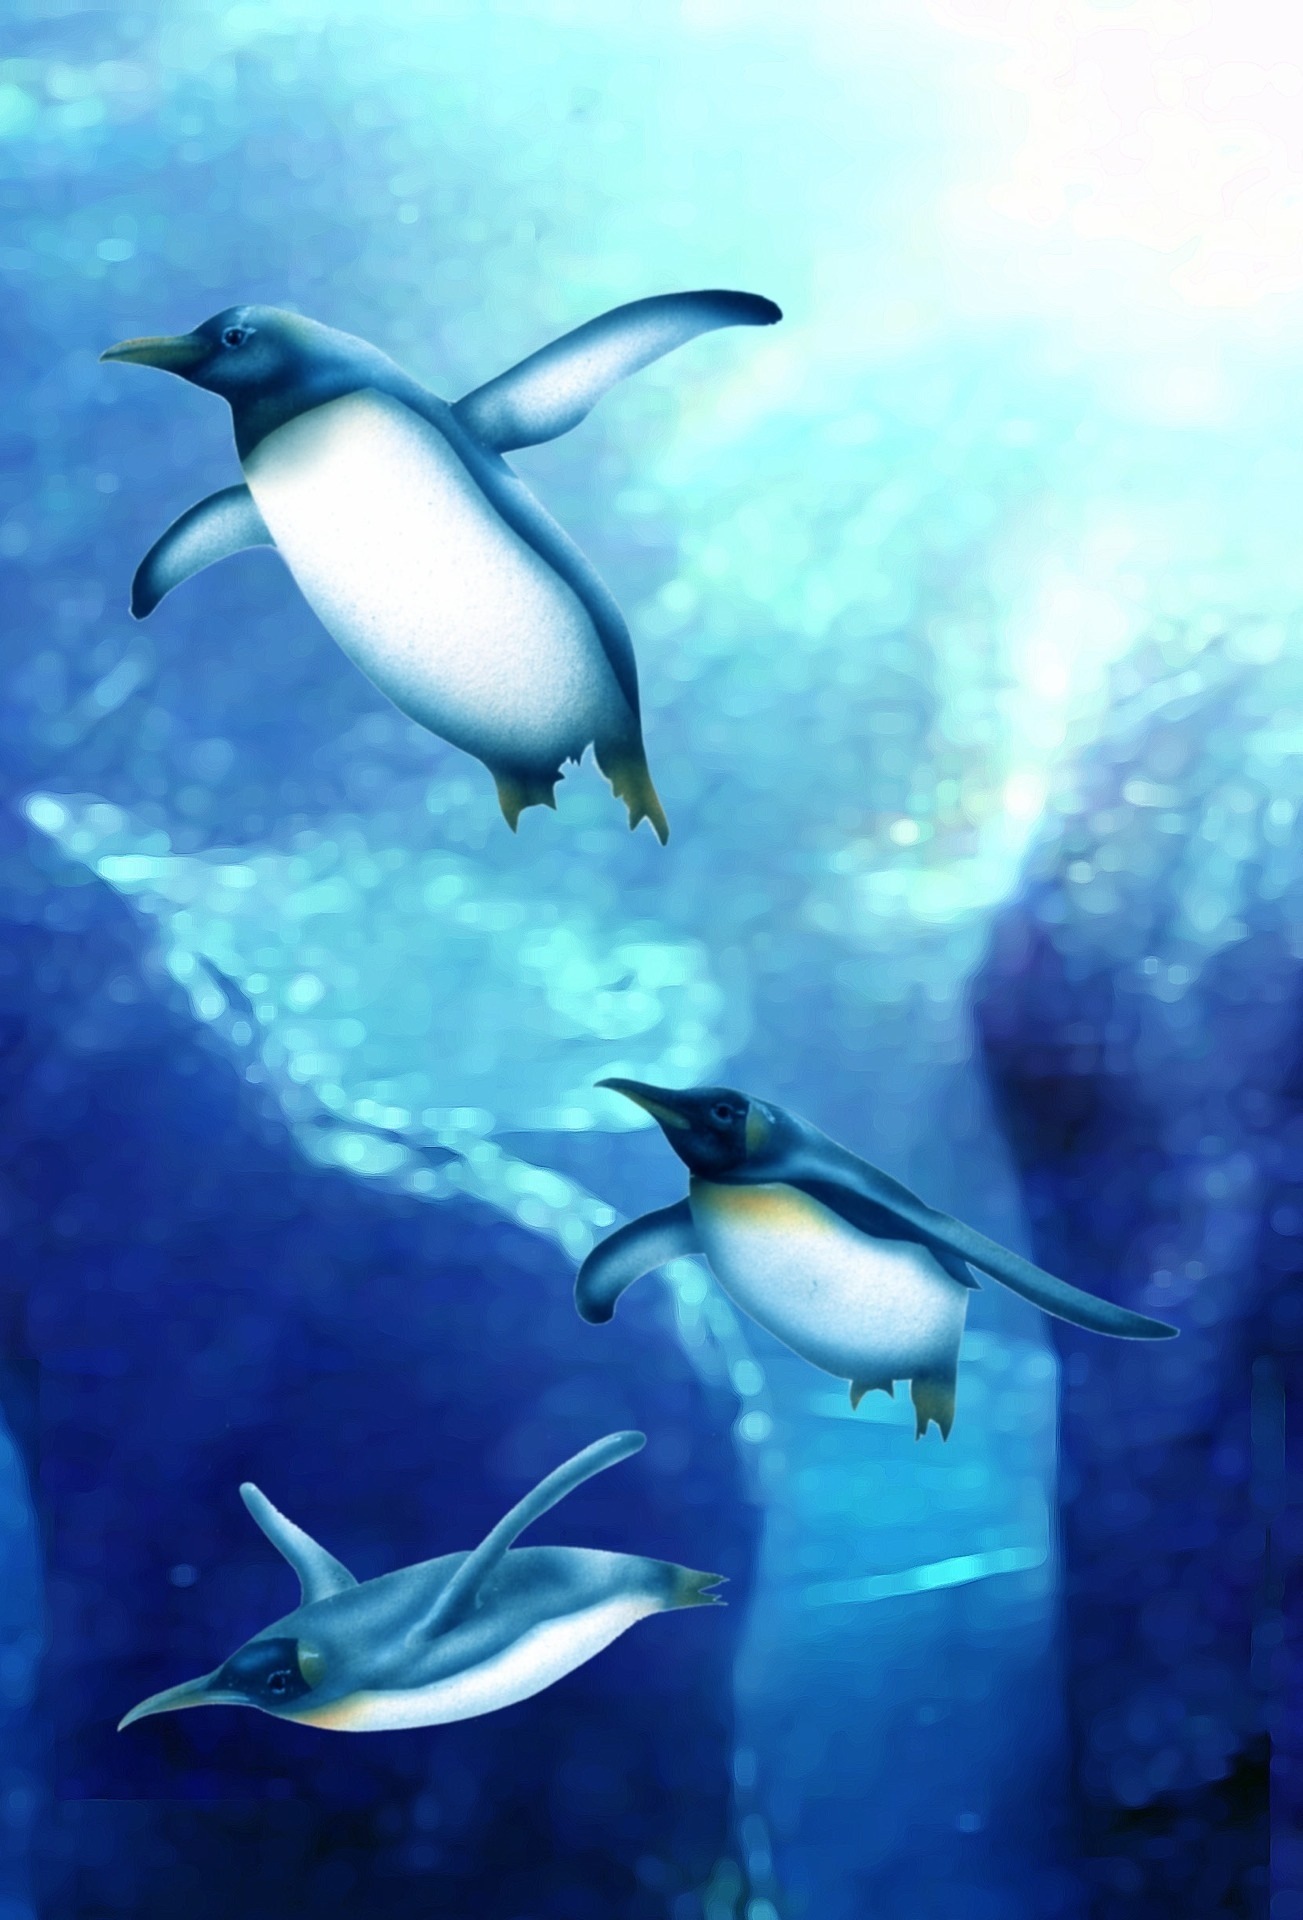 リアリズム絵画 動物の絵 動物イラスト ペンギン 空飛ぶペンギン